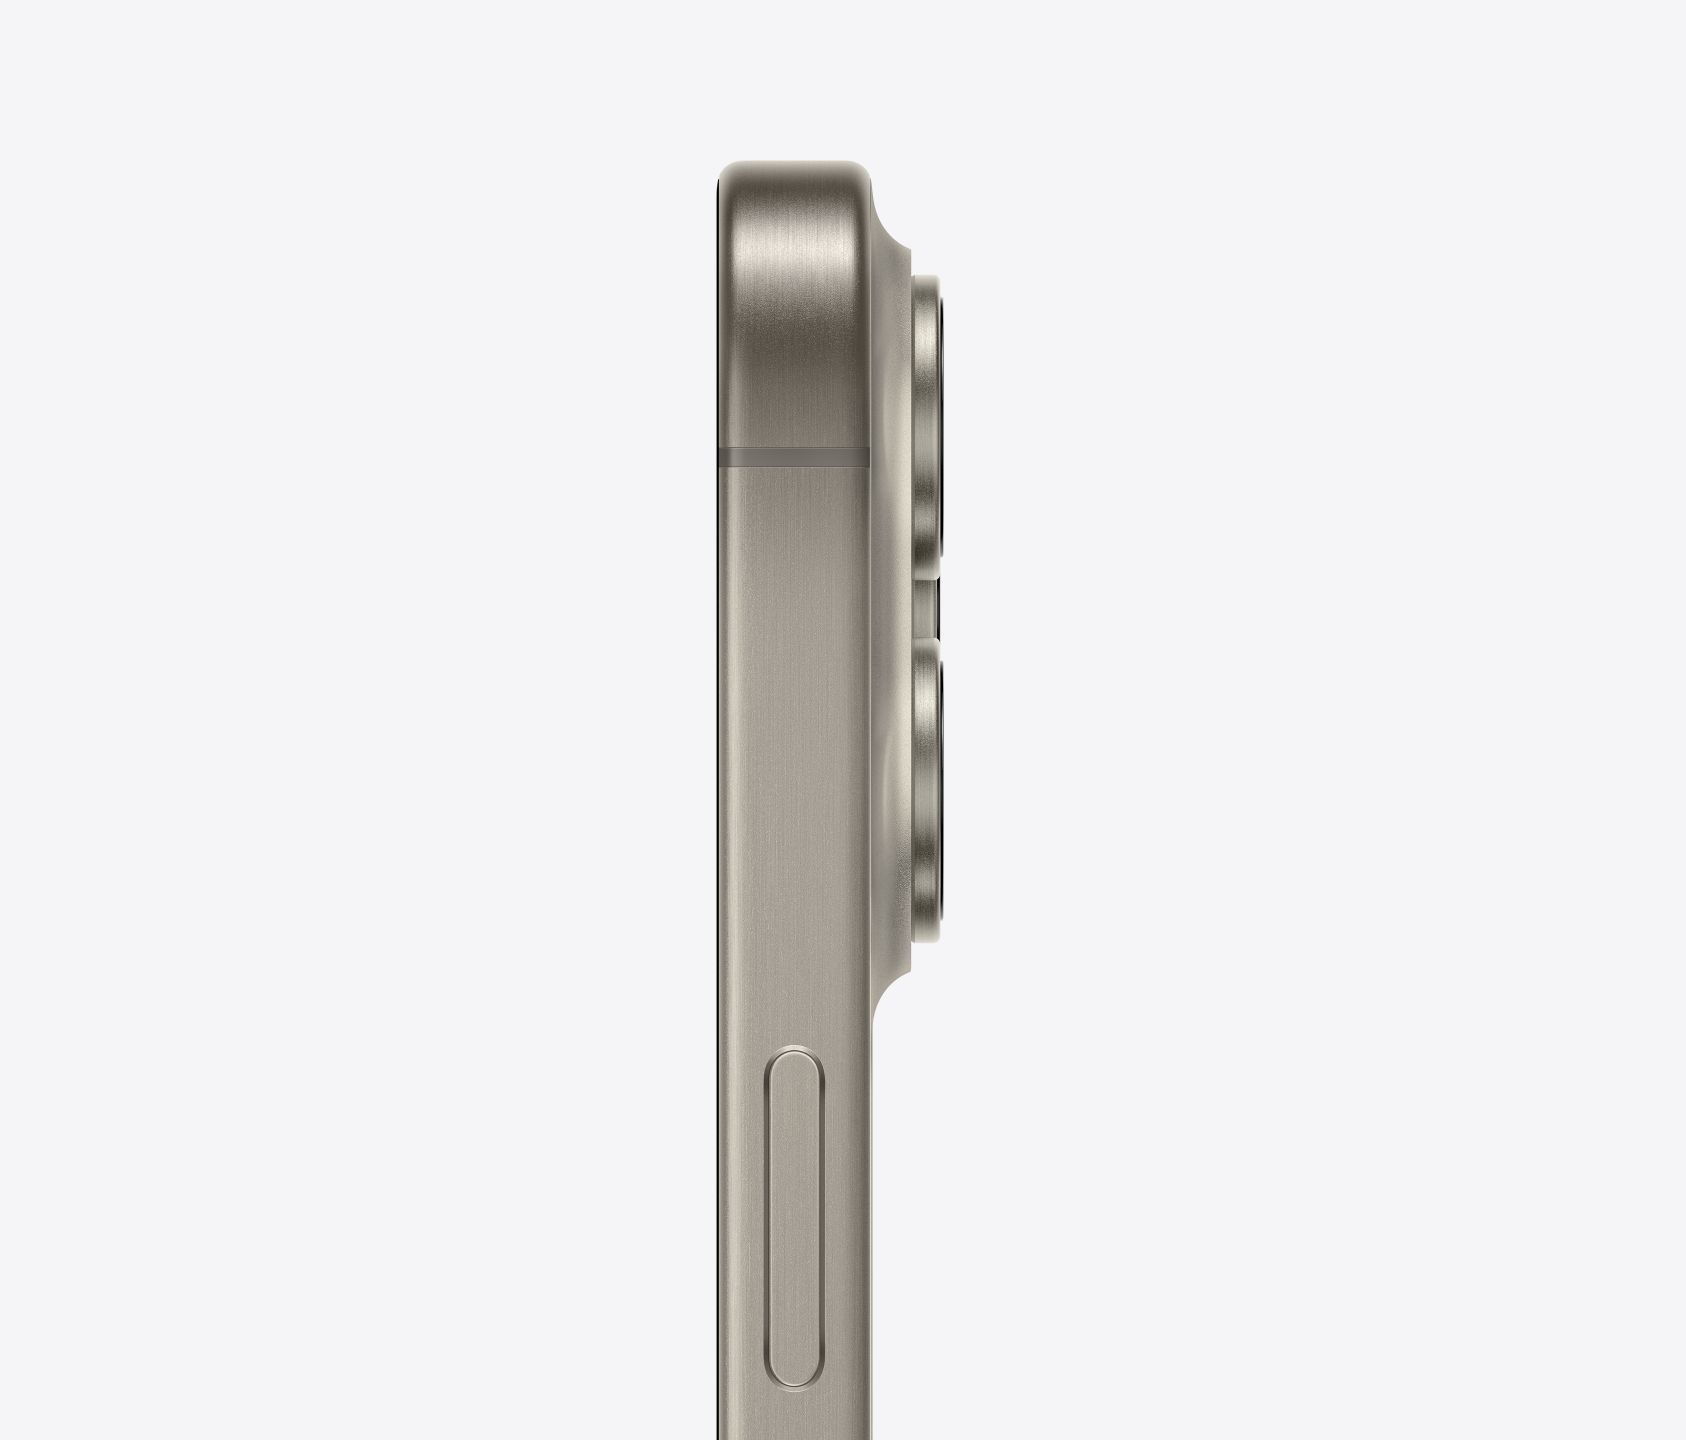 Apple IPhone 15 pro (Natural Titanium,512 GB)  - Natural titanium, 512GB